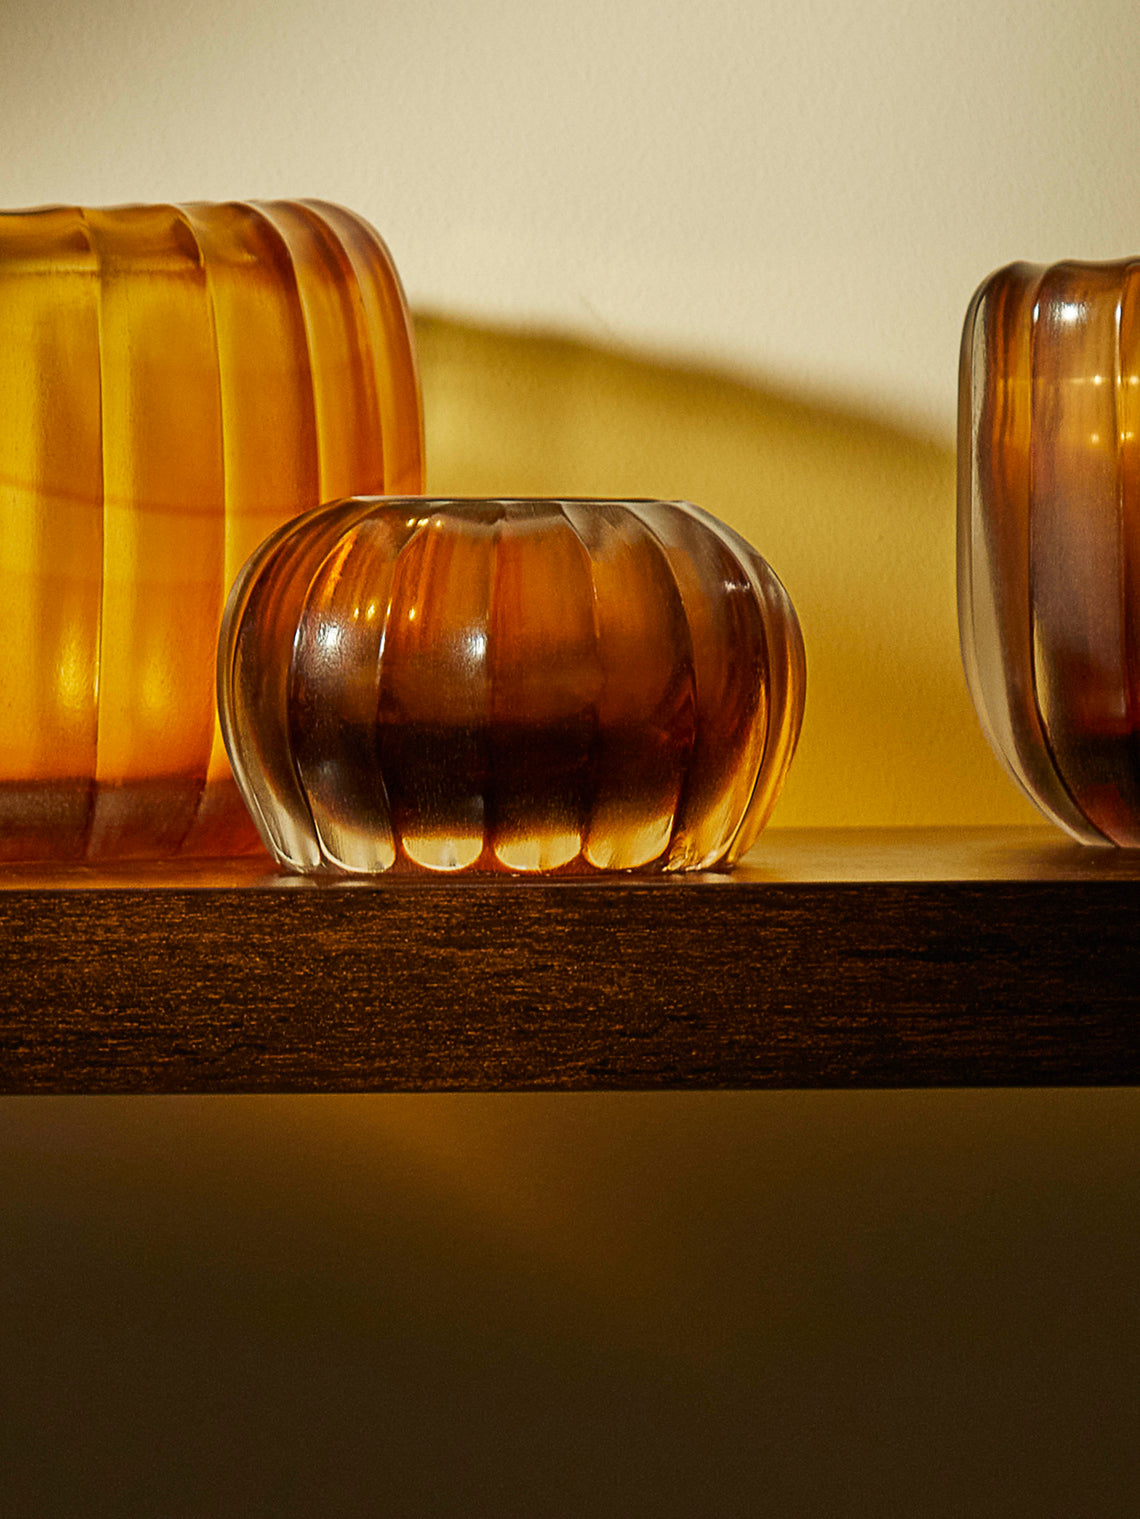 Micheluzzi Glass - Bocia Miele Hand-Blown Murano Glass Vase - Yellow - ABASK